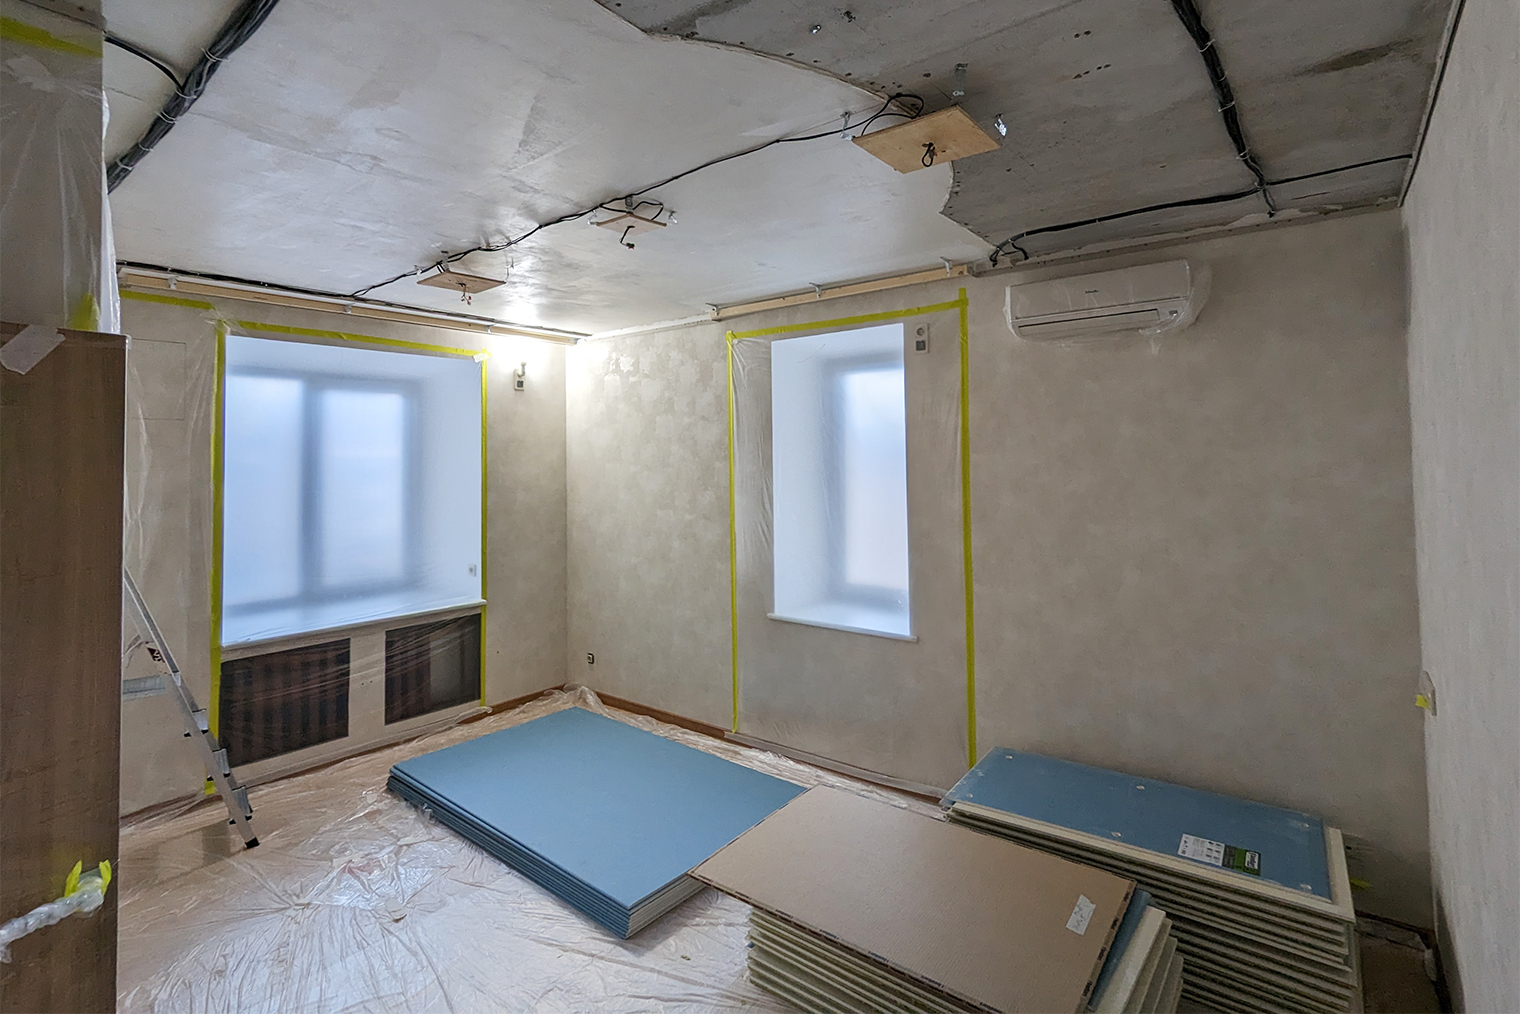 Звукоизоляция, шумоизоляция потолка в квартире Пенза